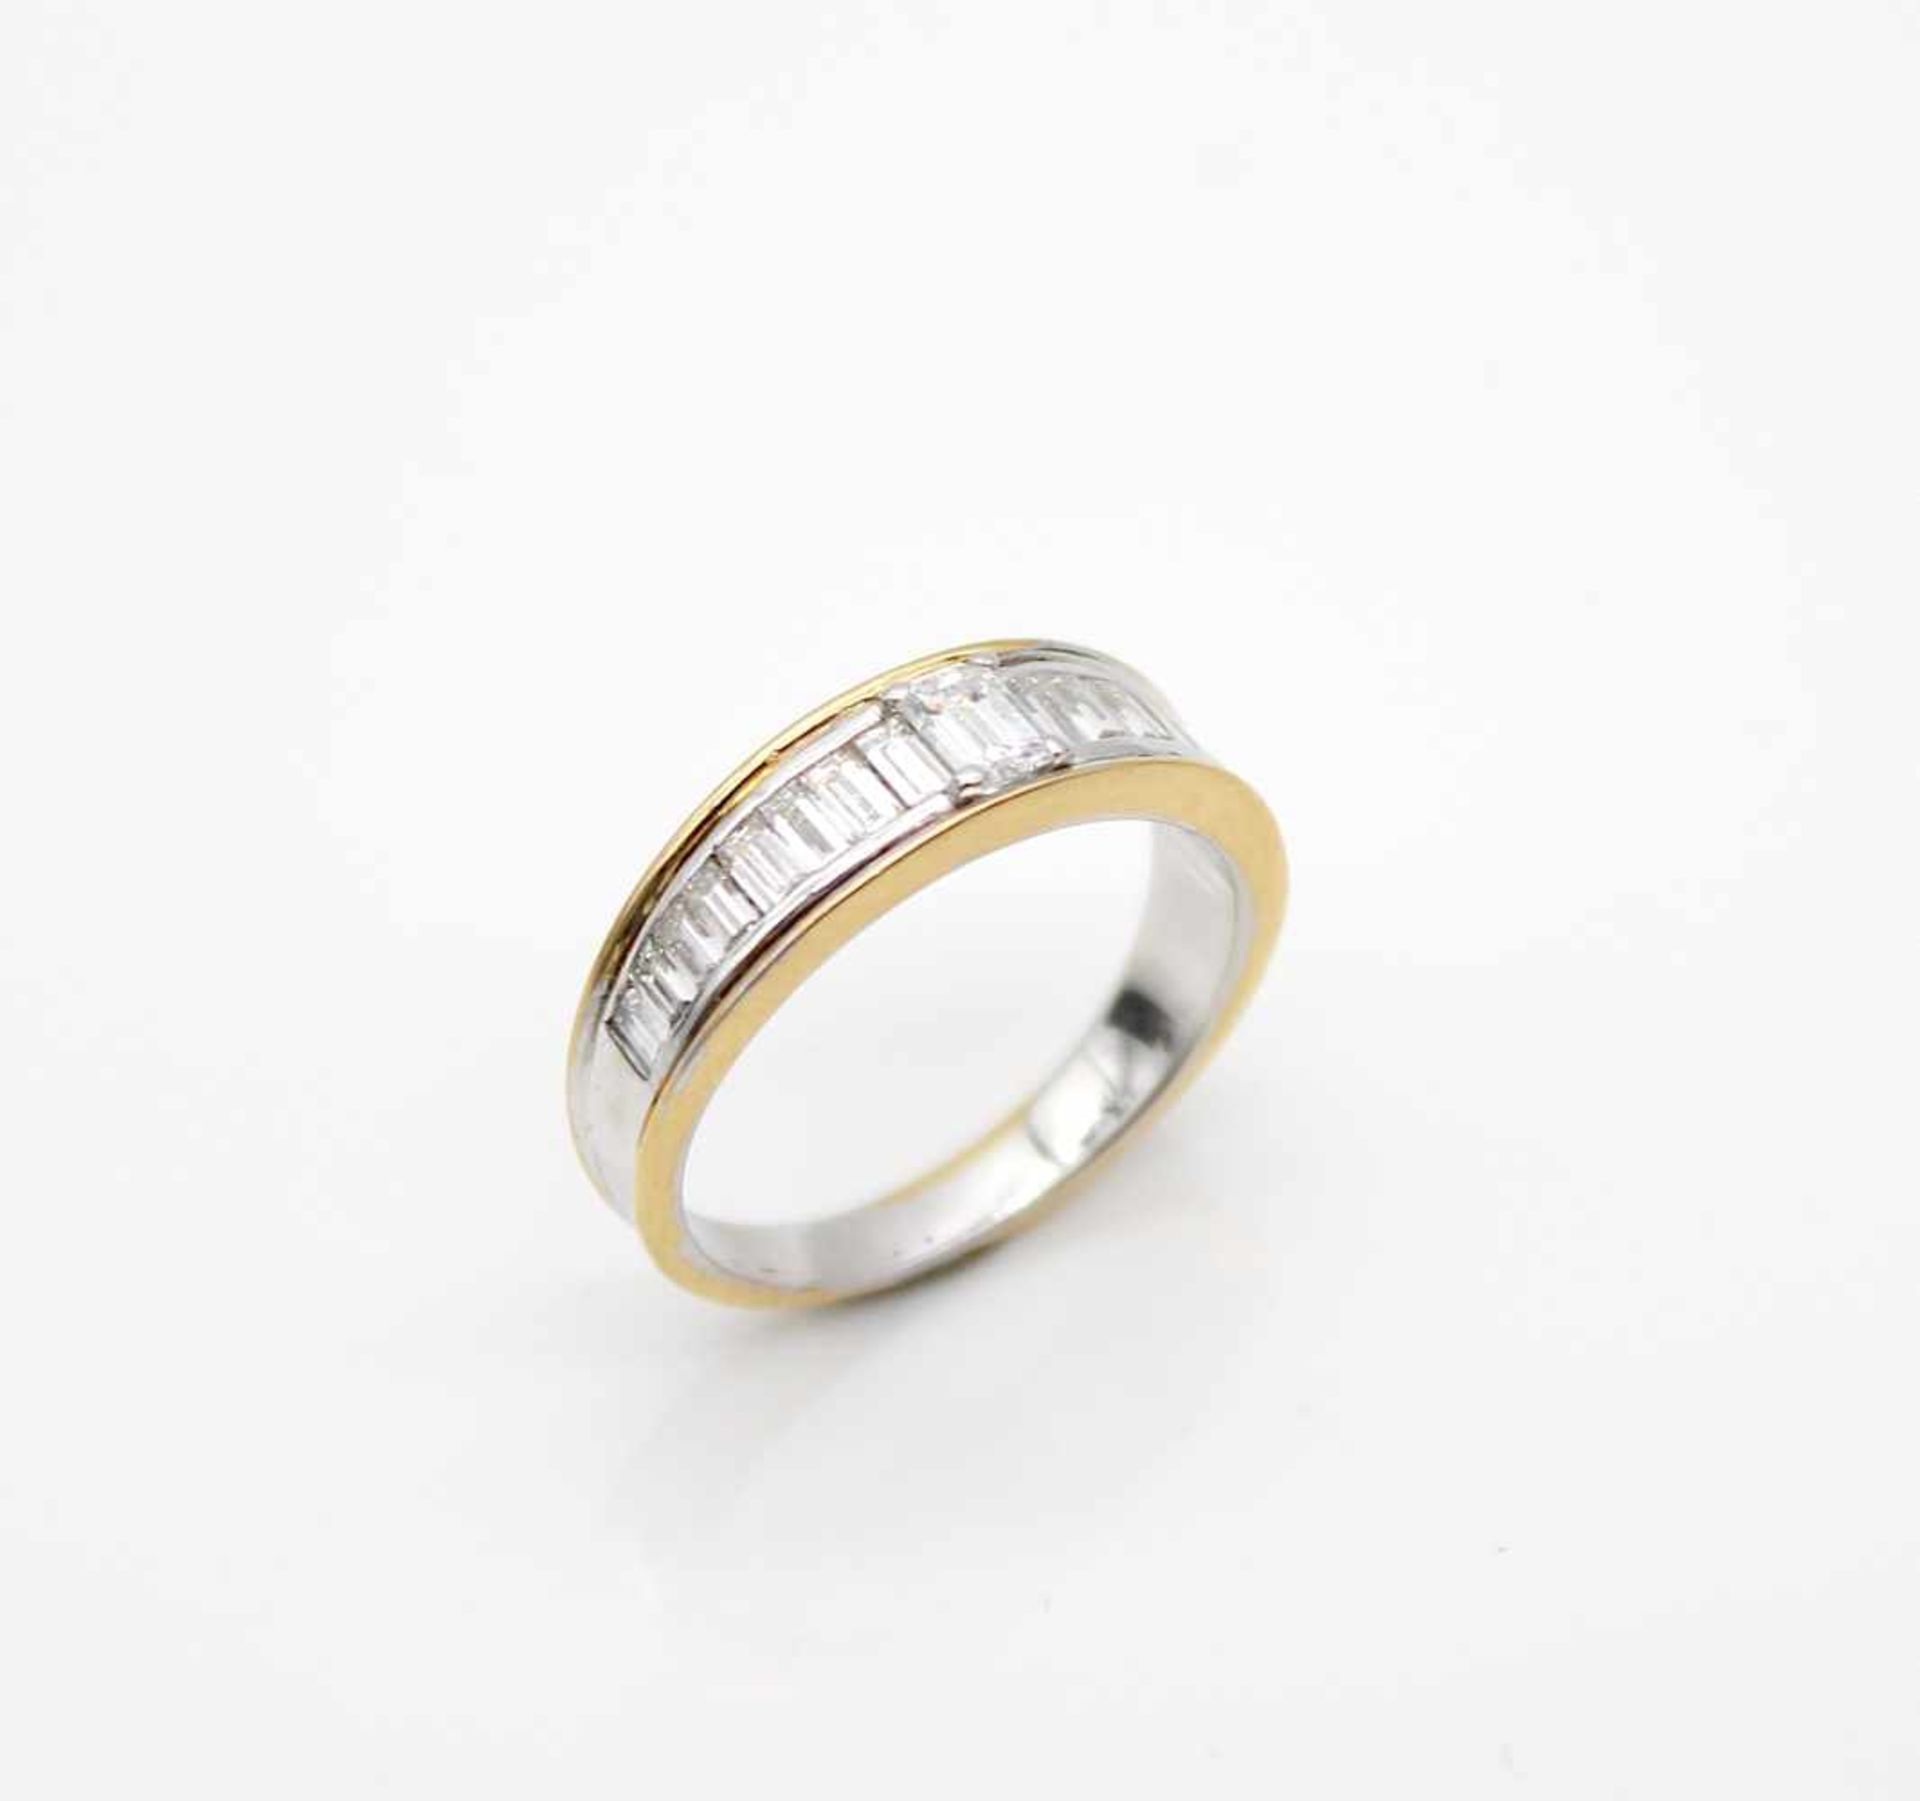 Ring auf 750er Weiß- und Gelbgold geprüft, mit 16 Diamanten im Baguetteschliff und 1 Diamant im